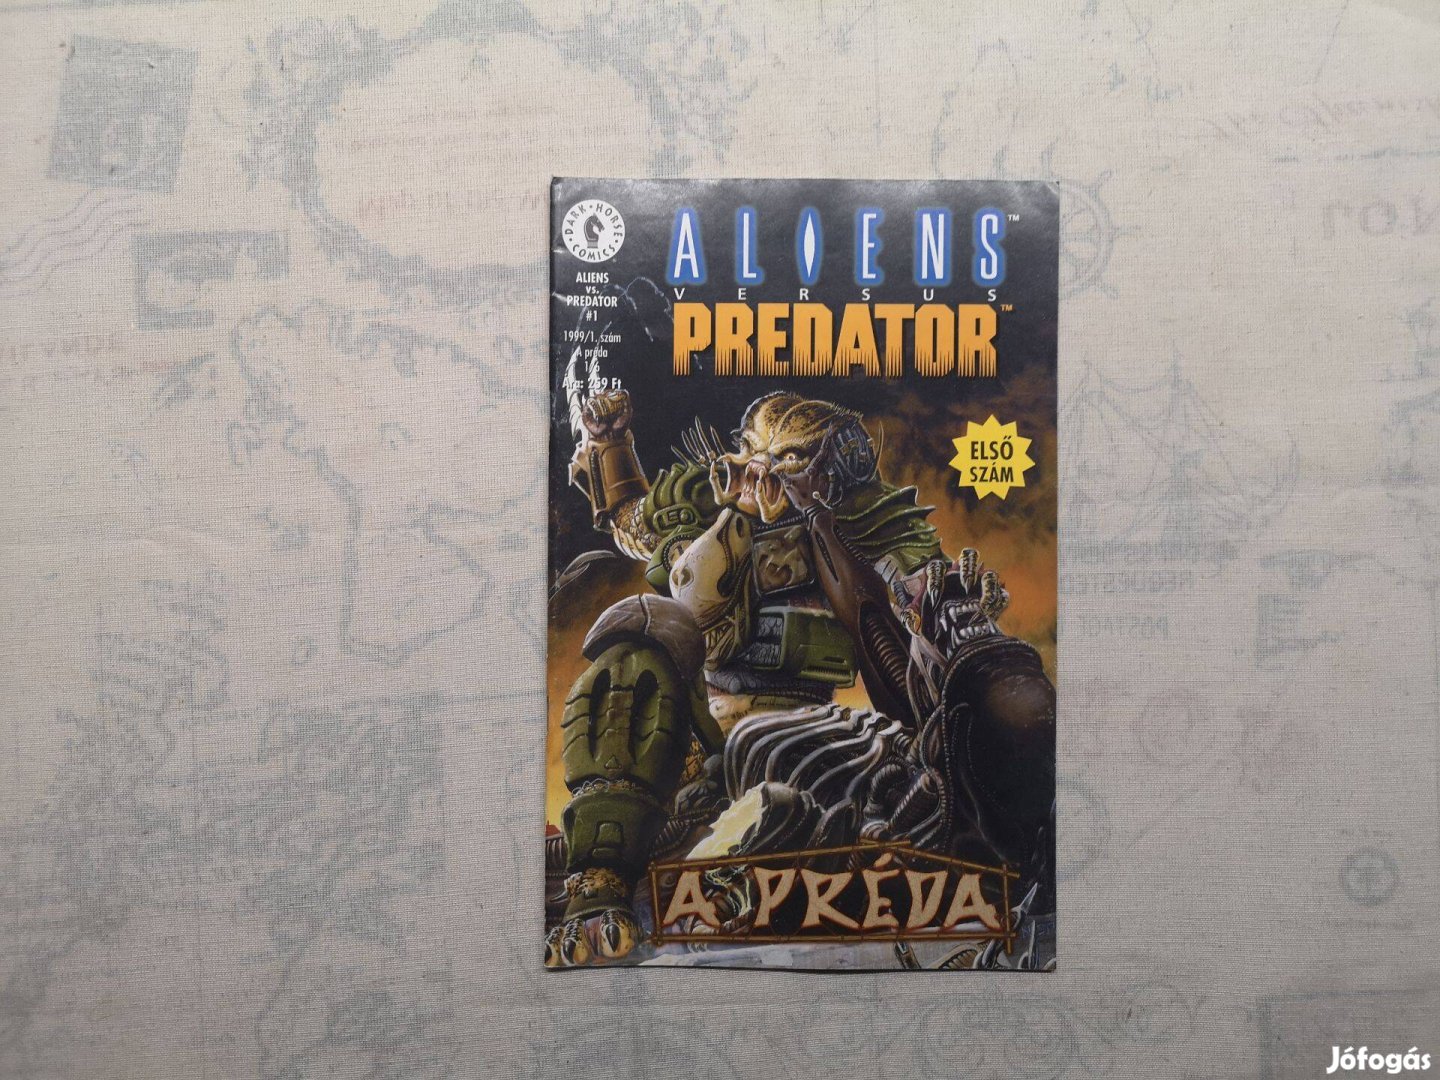 Aliens versus Predator - A préda 1. szám